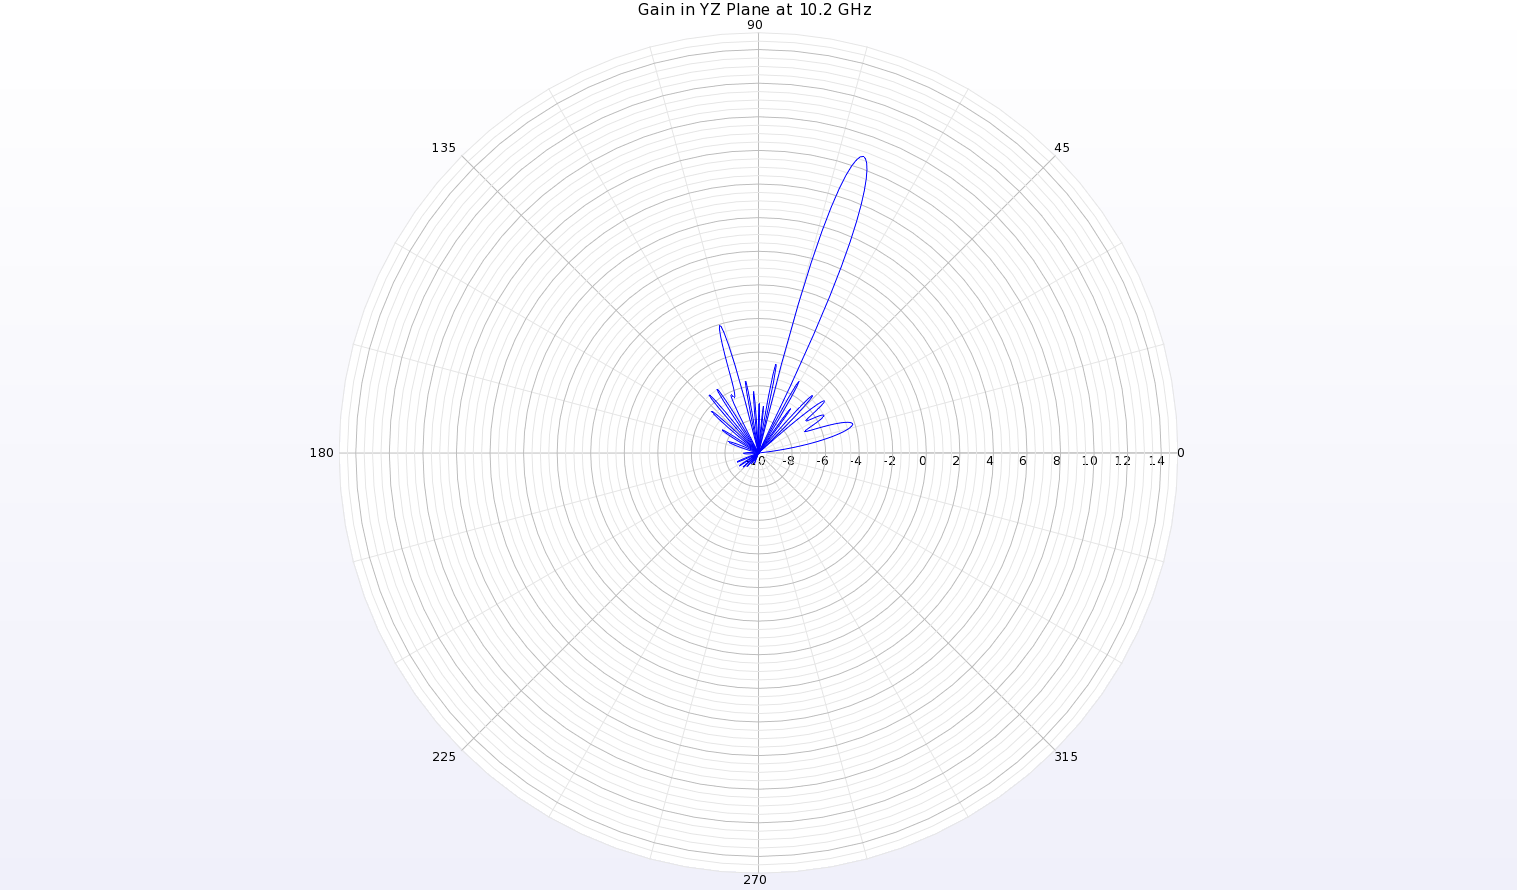 图 7：YZ 平面（沿天线长度方向）上 10.2 千兆赫的增益模式极坐标图显示，θ=70 度处为窄波束，增益约为 8.6 dBi。